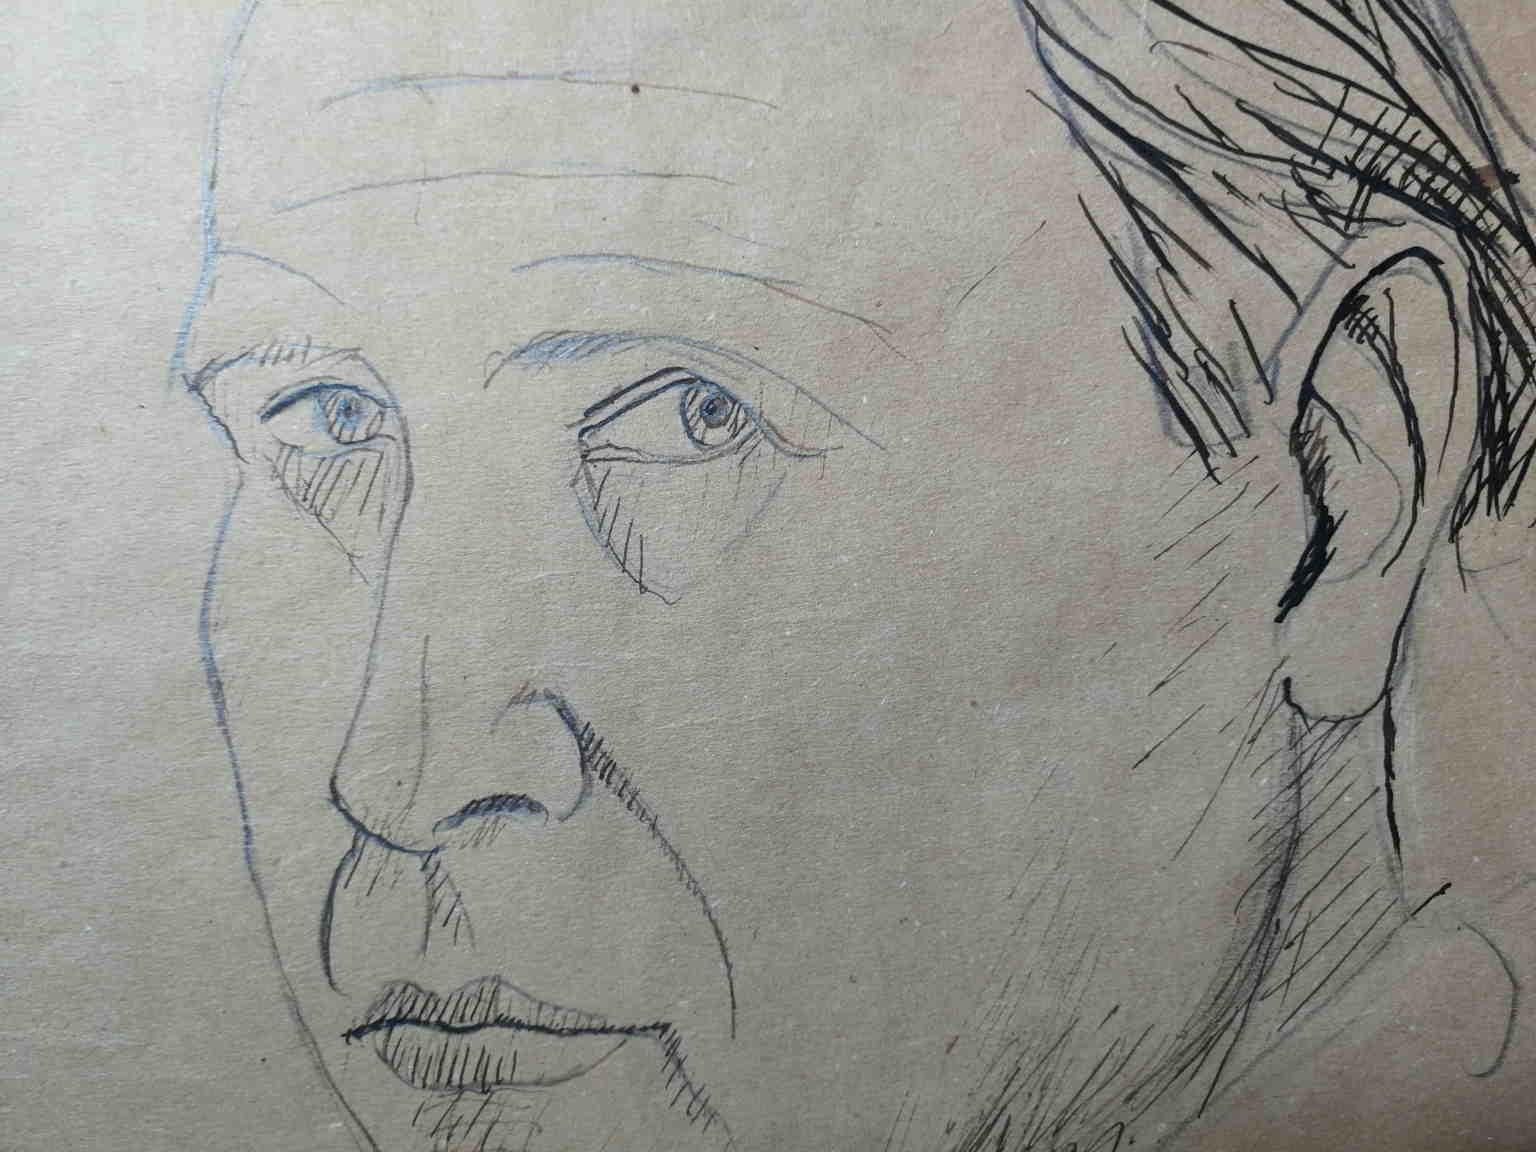 Signed Gisberto Ceracchini Self-portrait Drawing  1930s pen pencil paper 